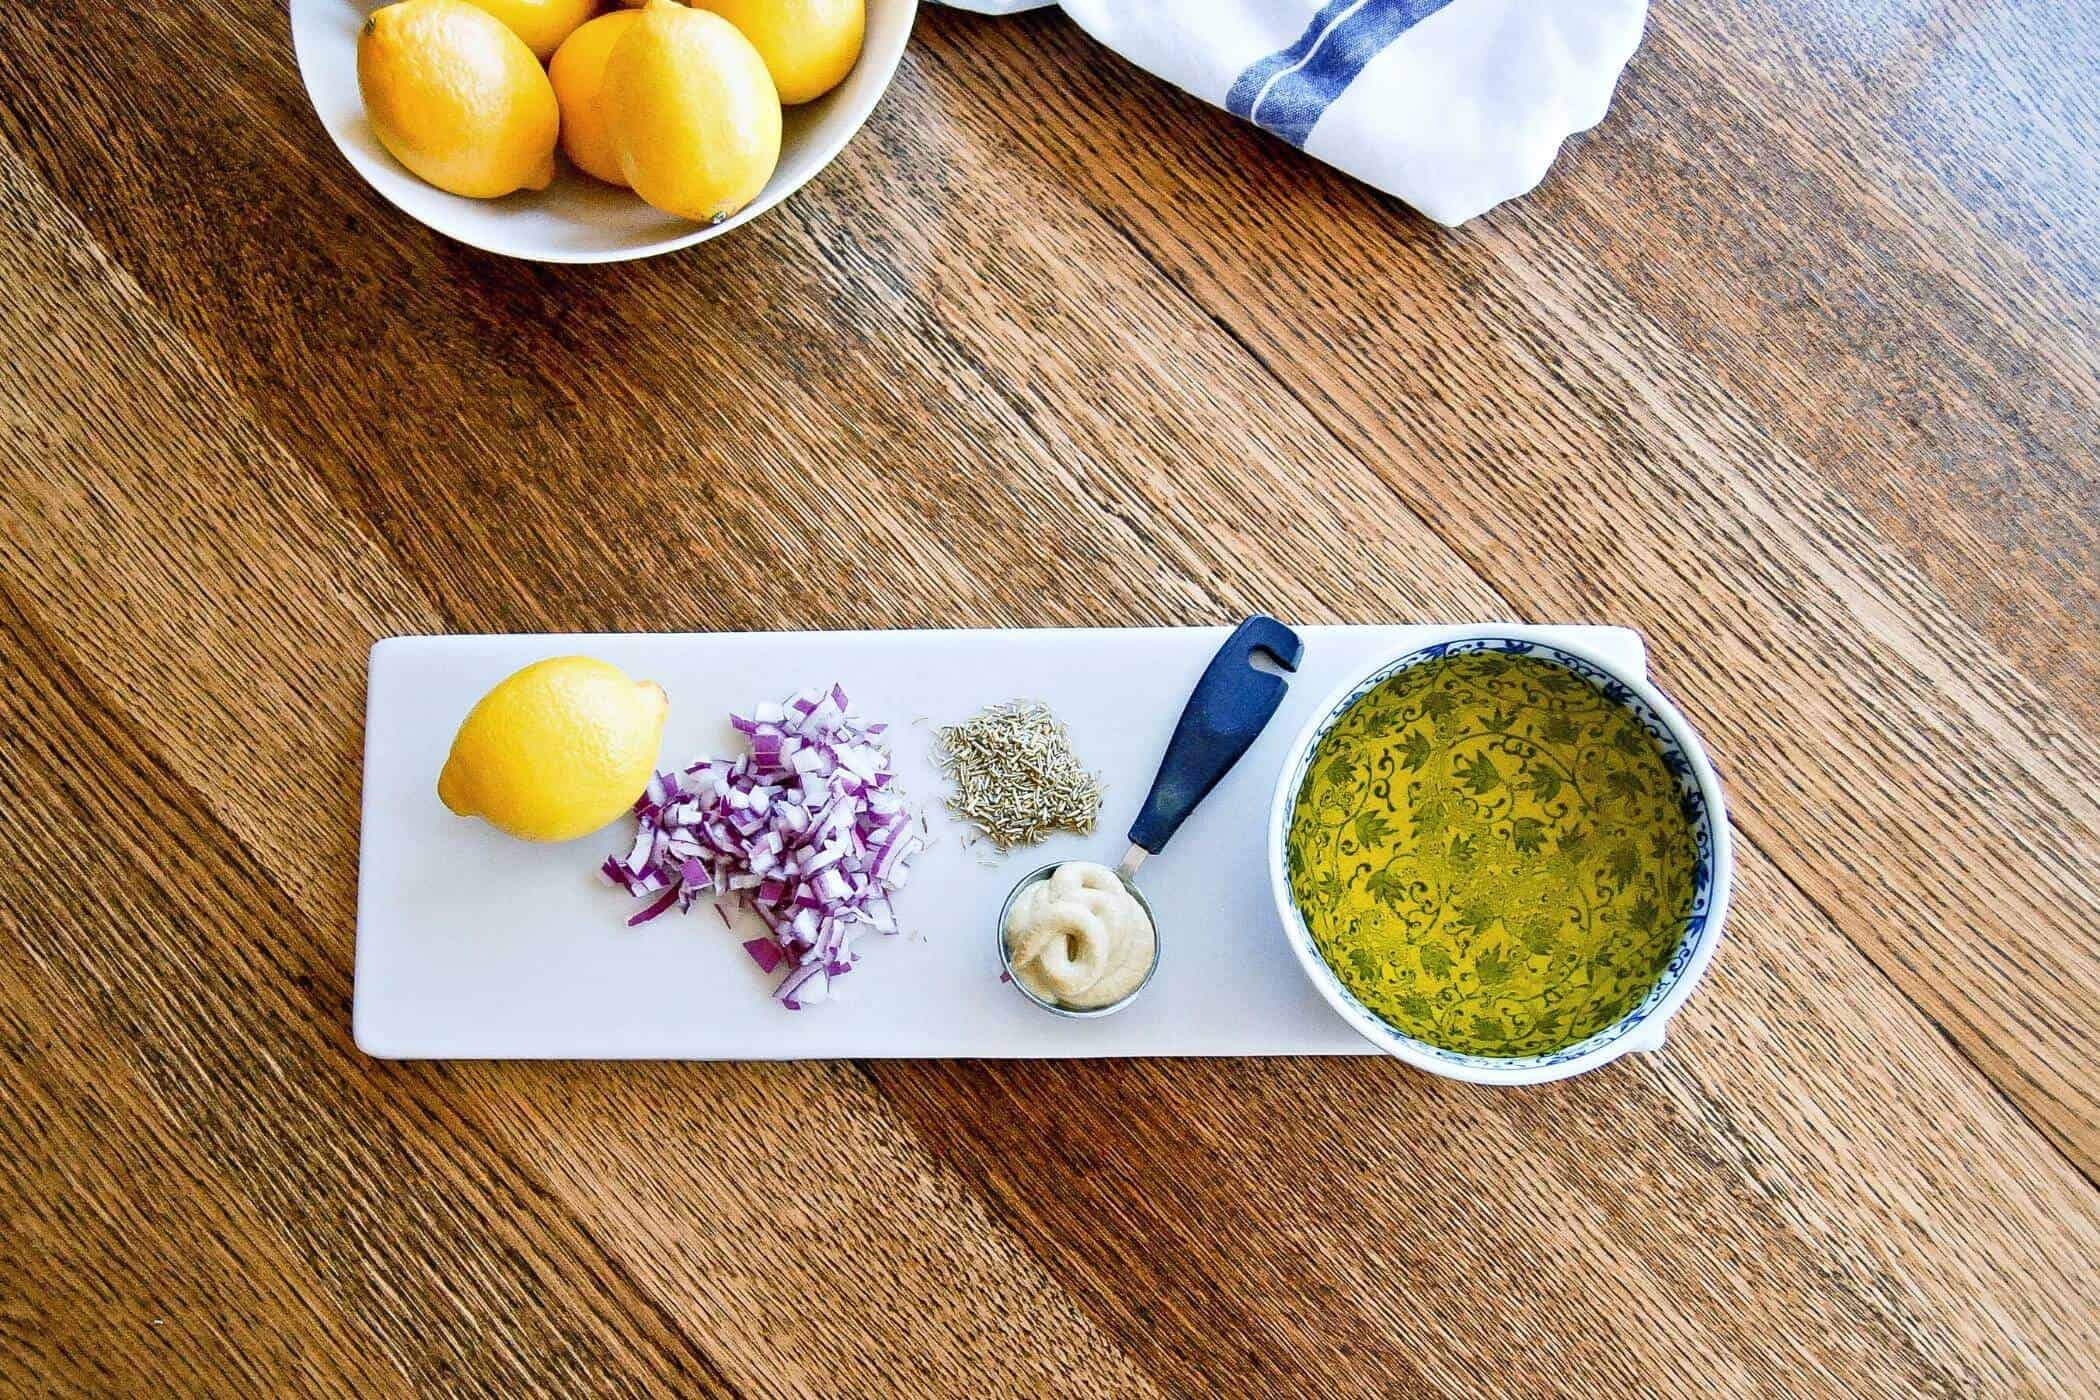 honey lemon and rosemary vinaigrette ingredients on table.